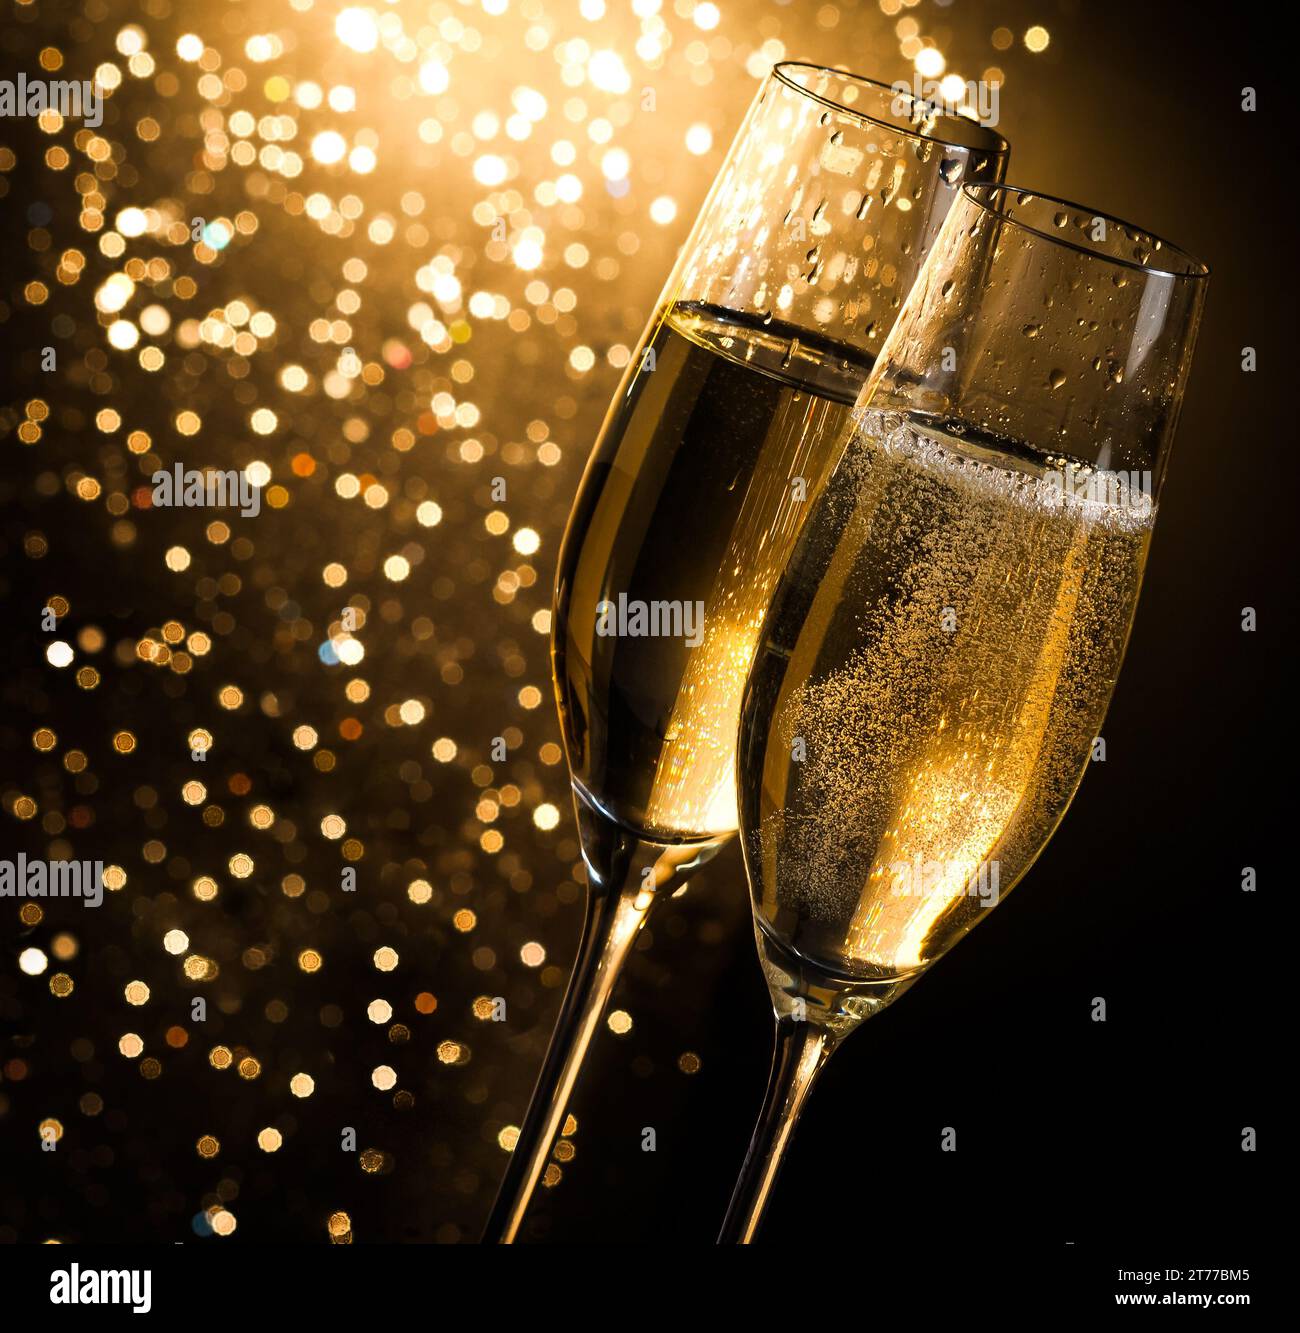 flauti di champagne con bollicine dorate su sfondo bokeh chiaro dorato scuro con spazio per il testo Foto Stock